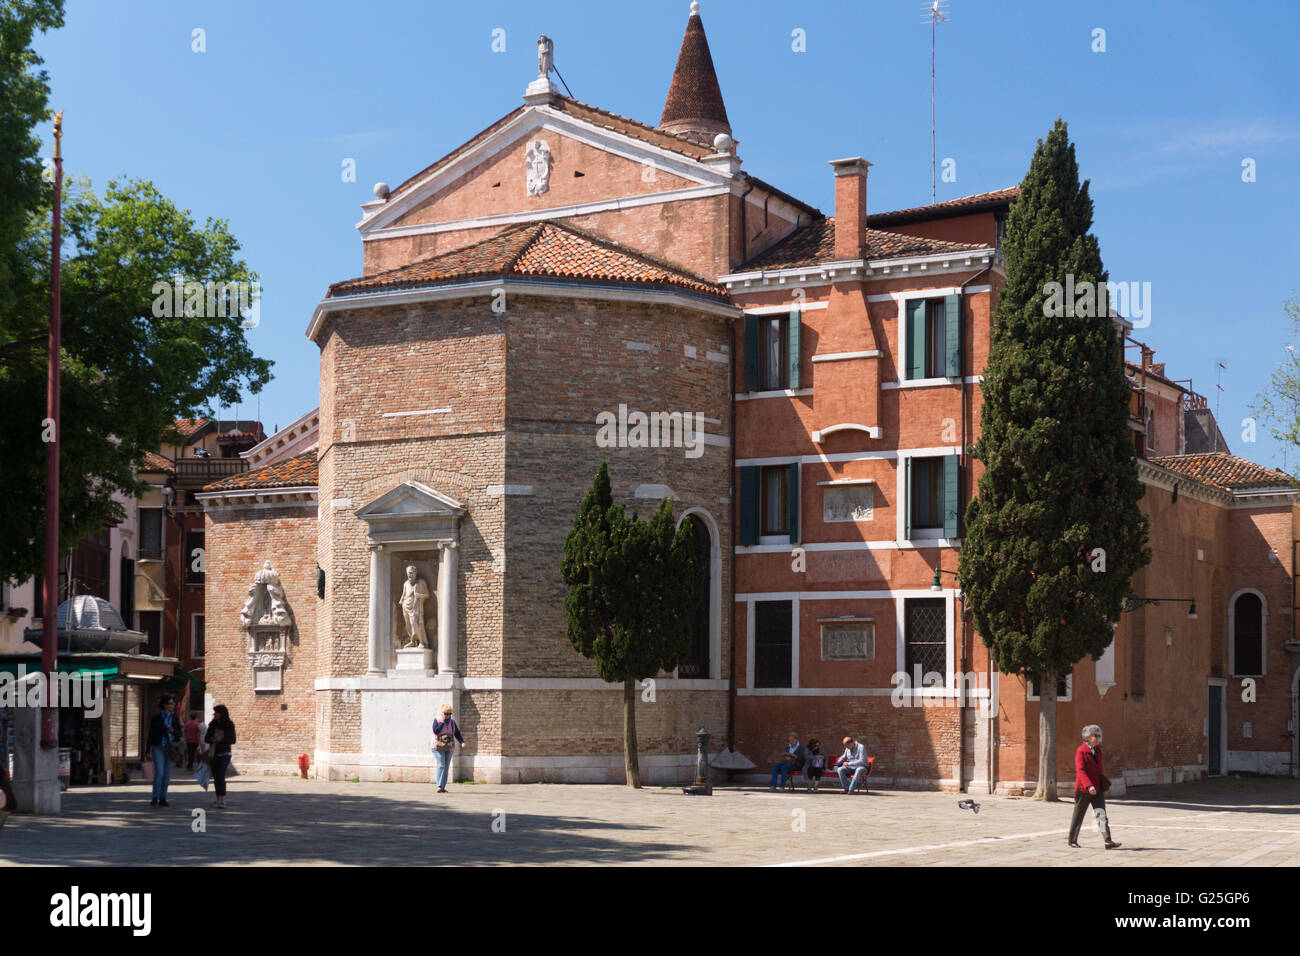 Die Apsis des gotischen Chiesa di San Polo, Venedig Stockfotografie - Alamy